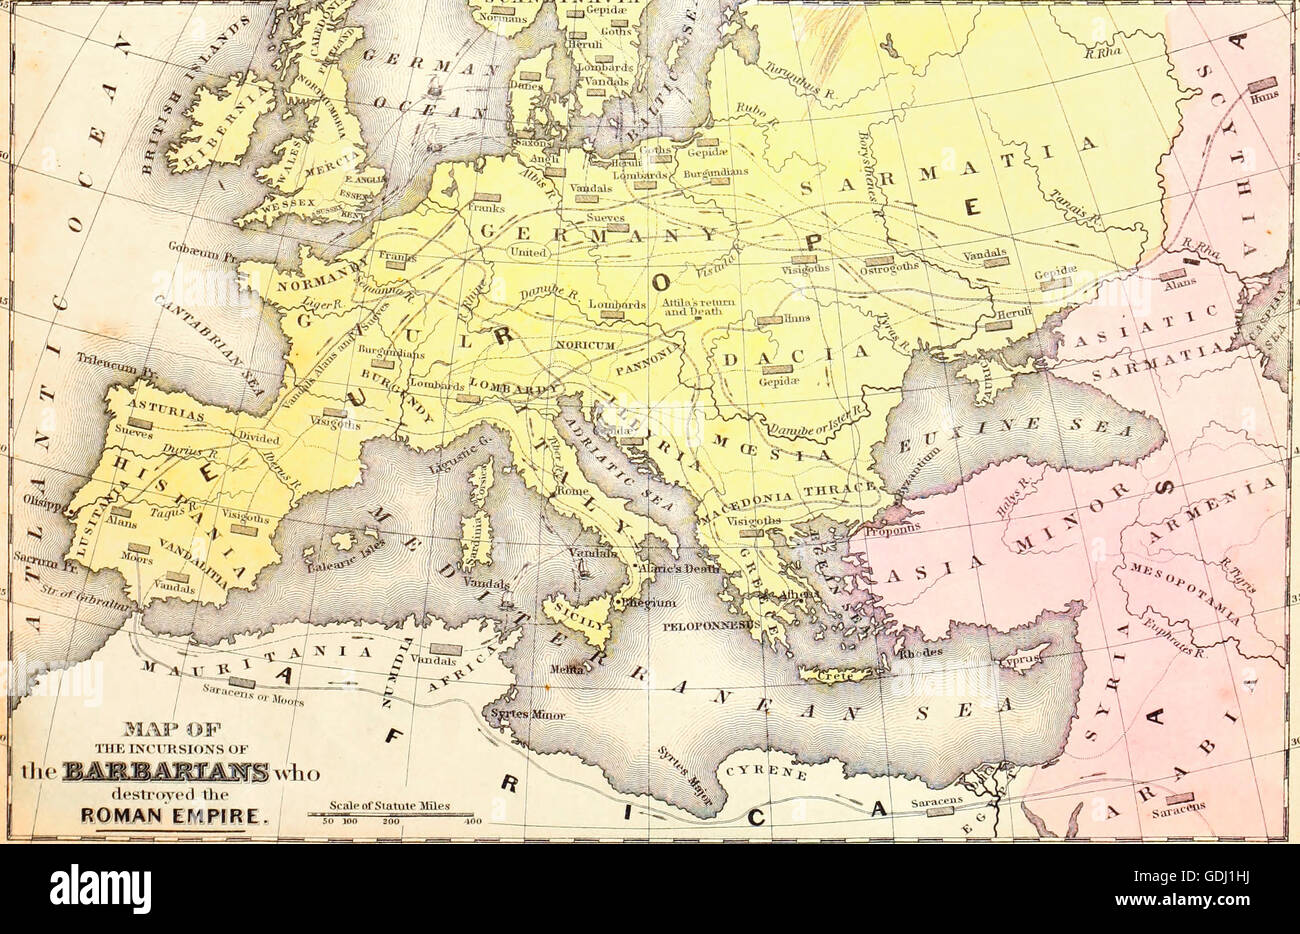 Karte von den Einfällen der Barbaren, die das römische Reich zerstört Stockfoto